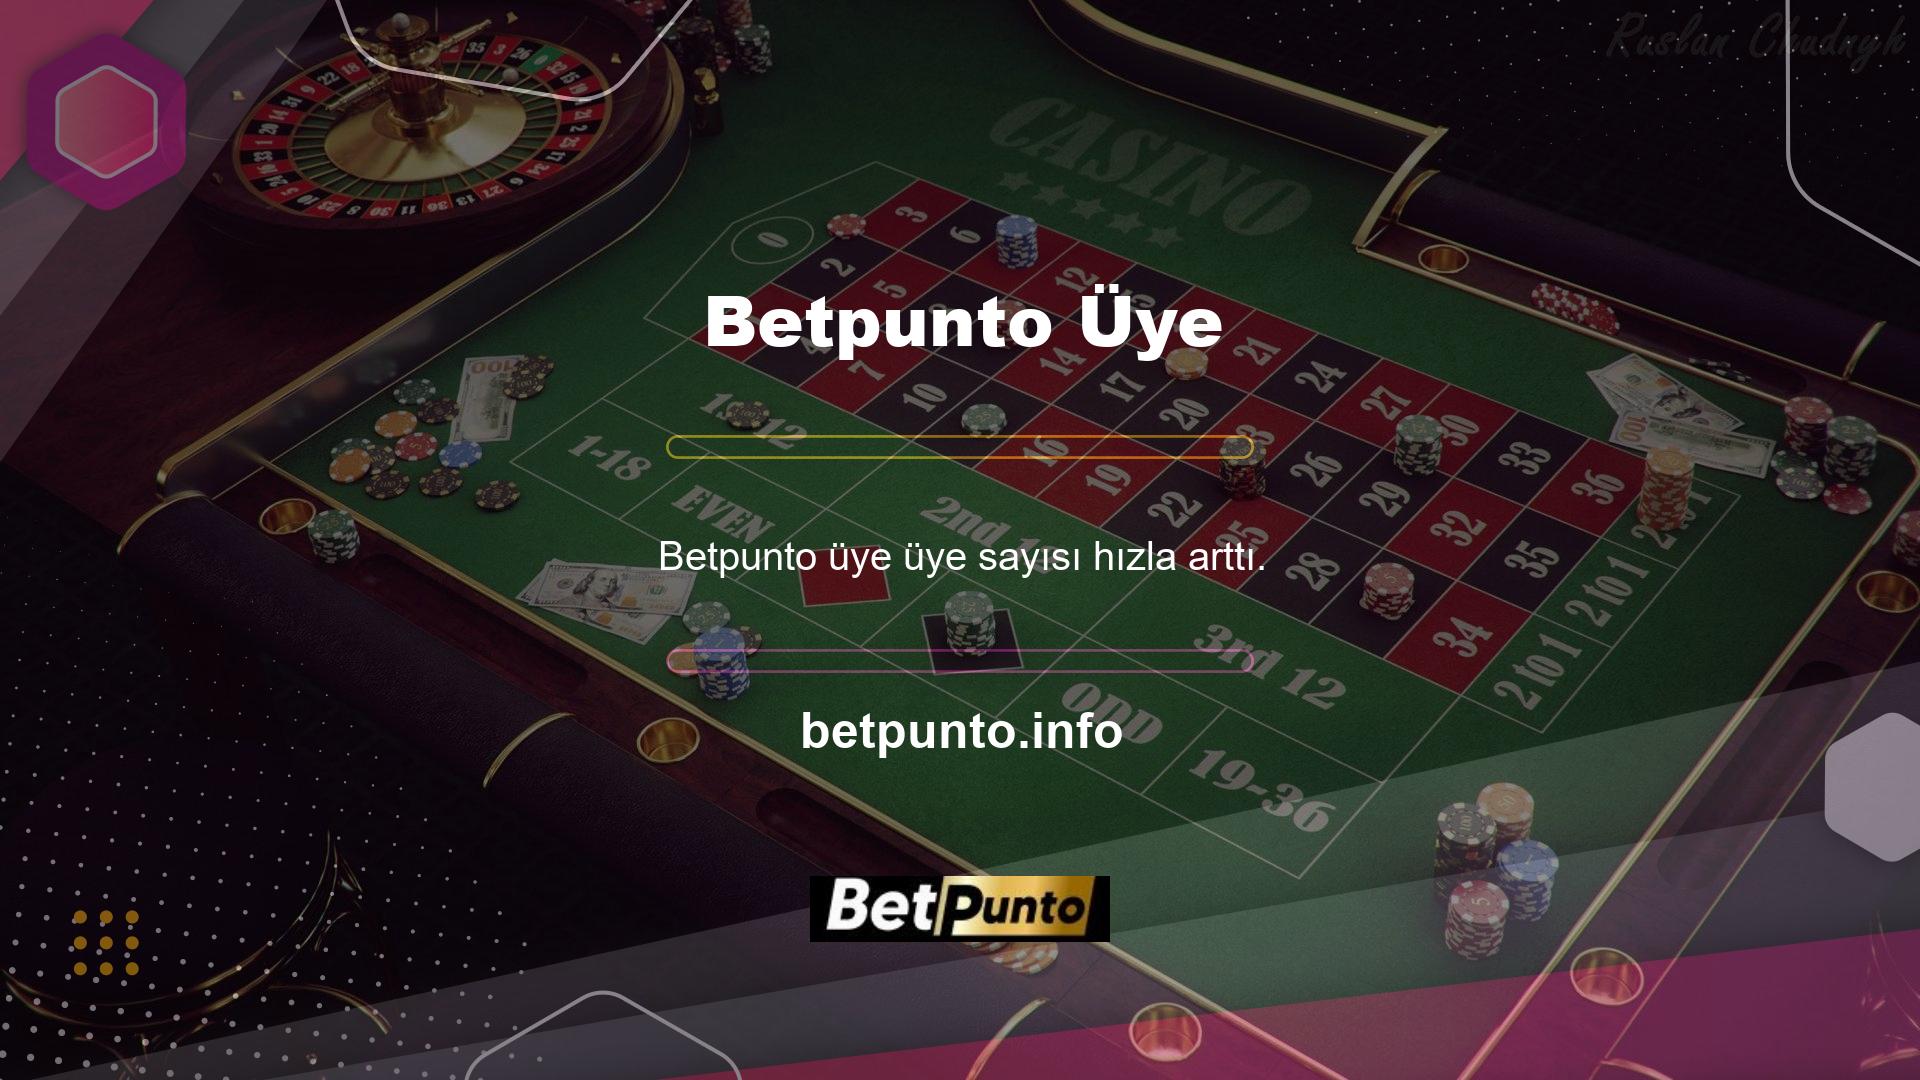 En çok abone olunan web sitelerinden biri Betpunto web sitesidir